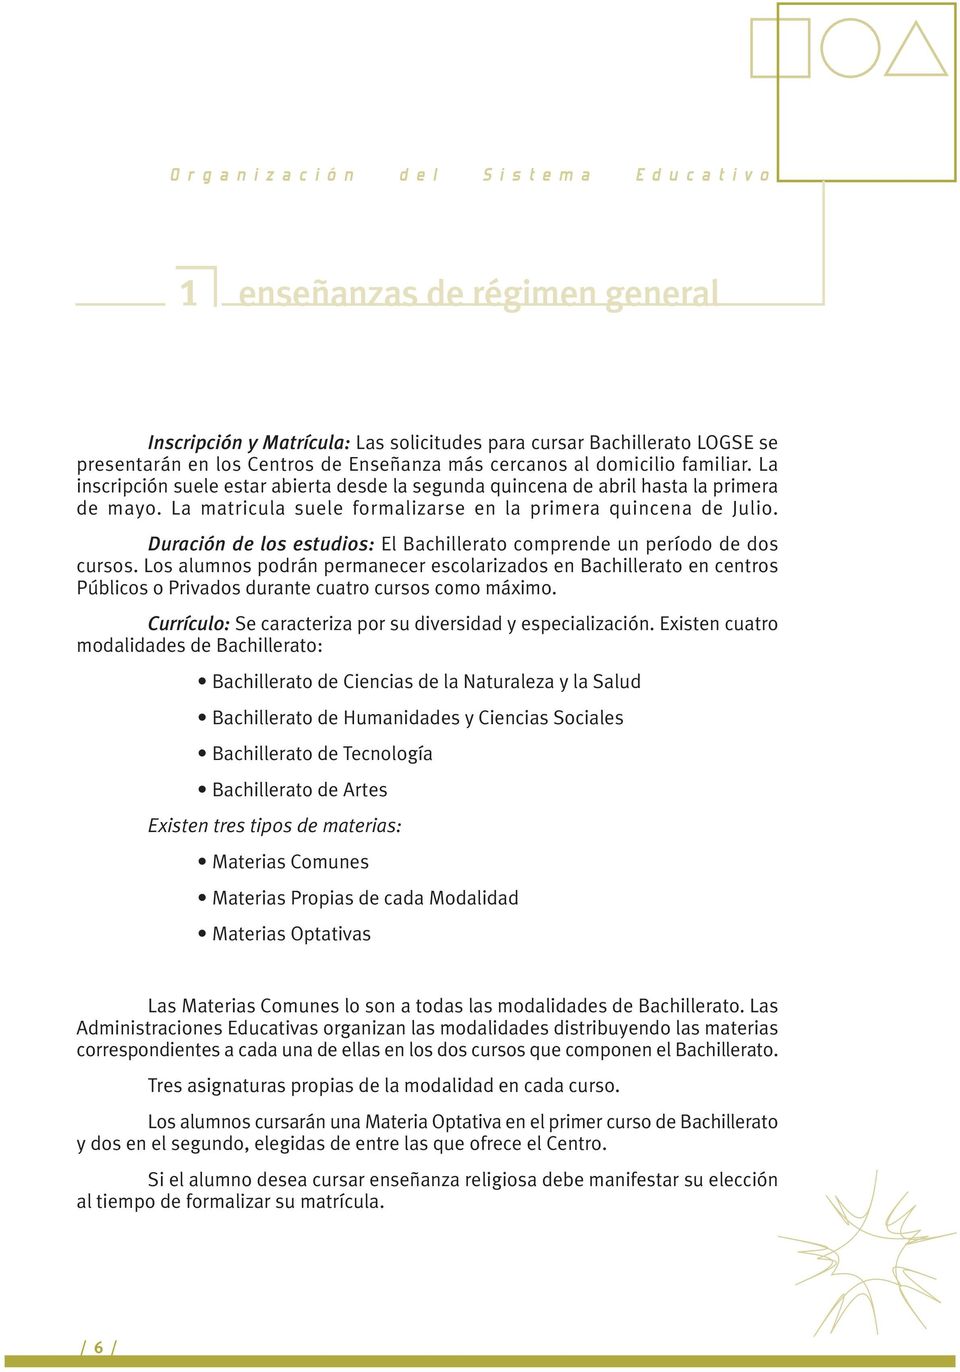 Duración de los estudios: El Bachillerato comprende un período de dos cursos.